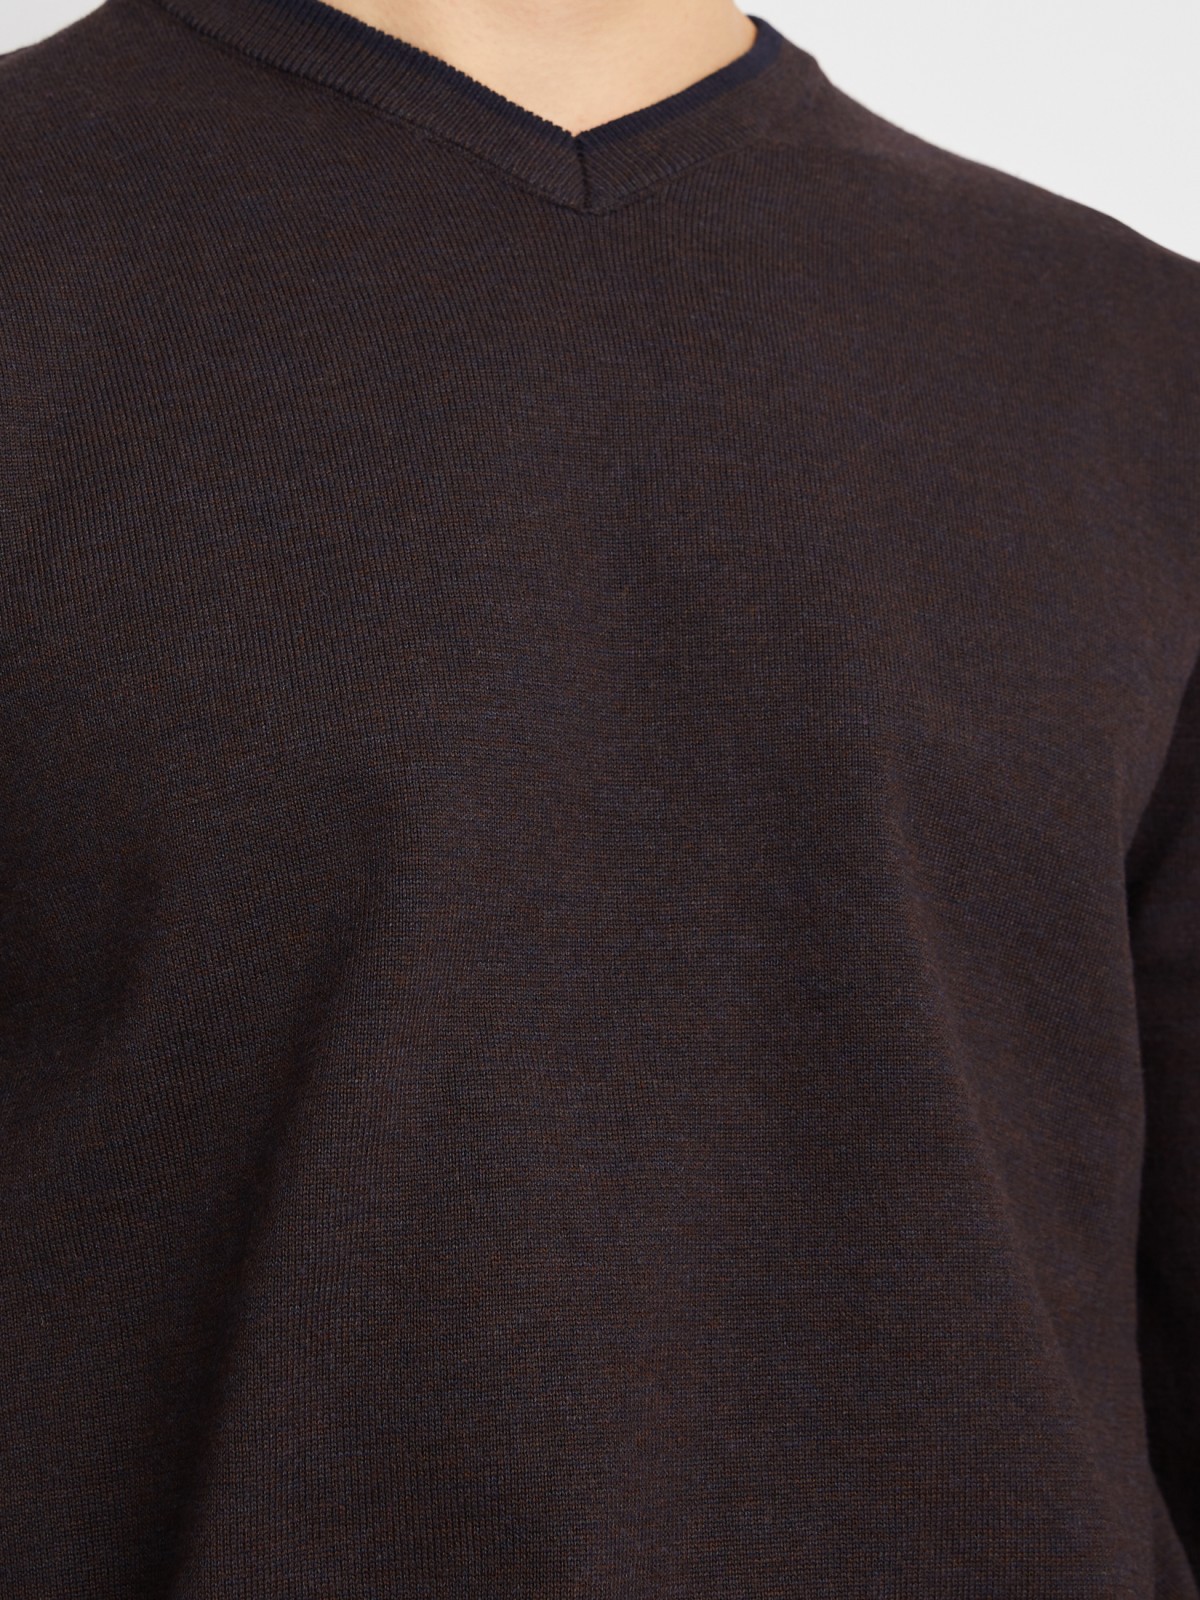 Тонкий трикотажный пуловер с длинным рукавом zolla 014116101082, цвет синий, размер M - фото 4